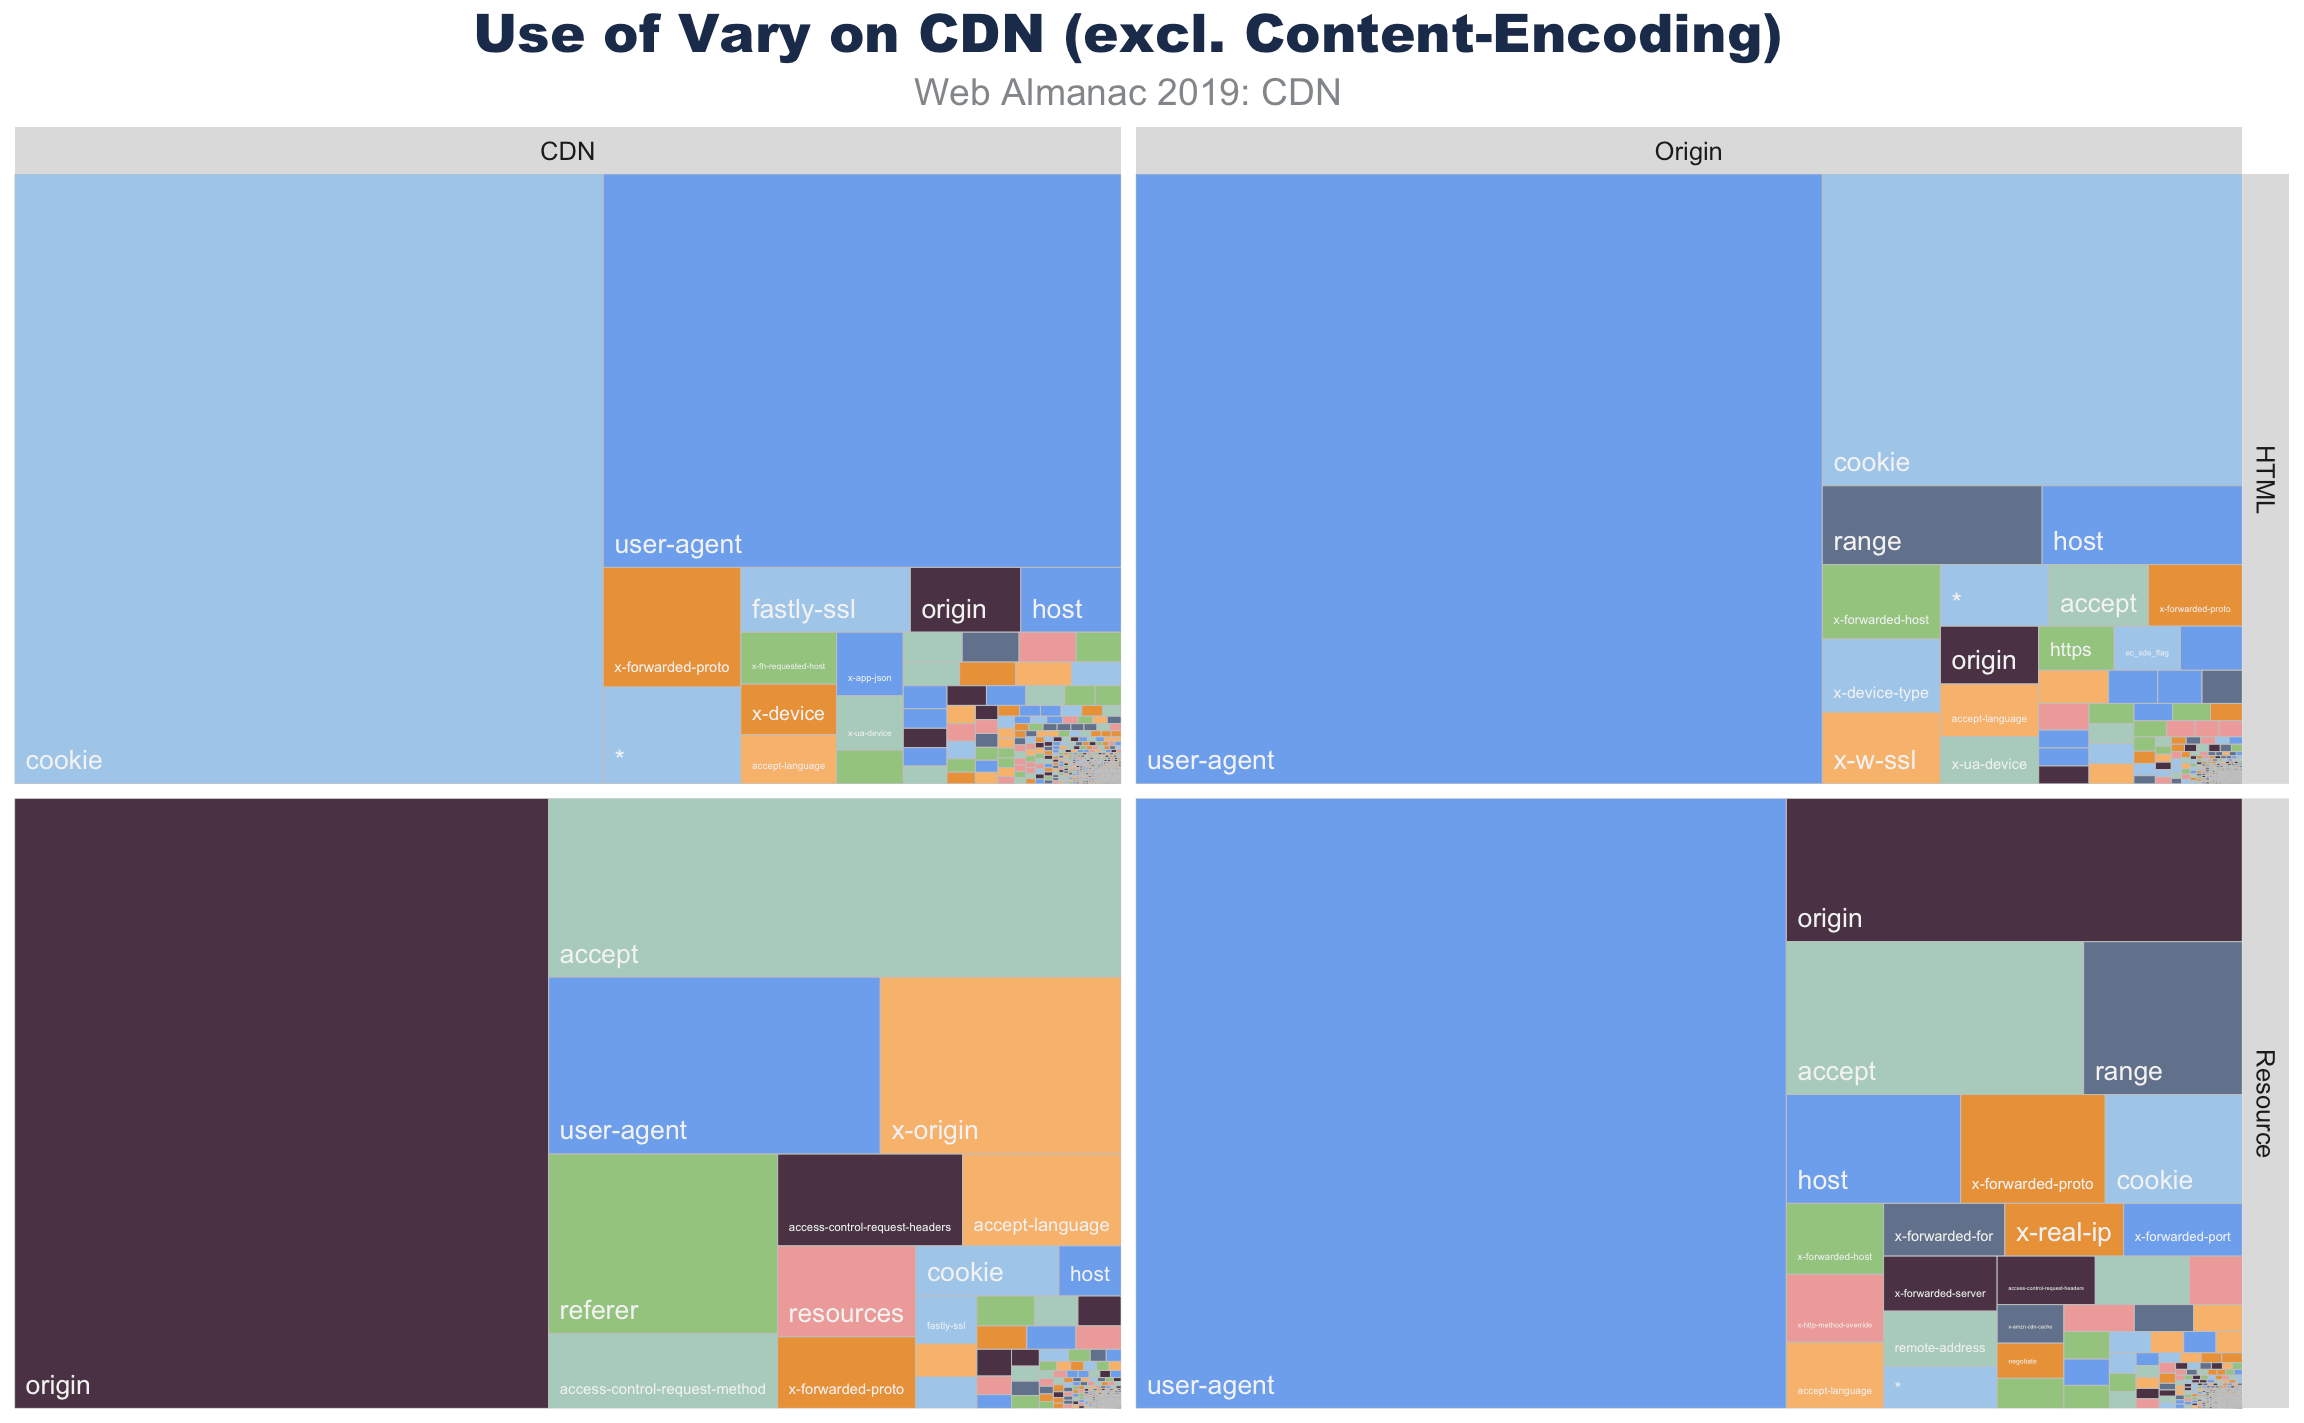 HTMLとoriginとCDNから提供されるリソースの Vary 使用の比較。